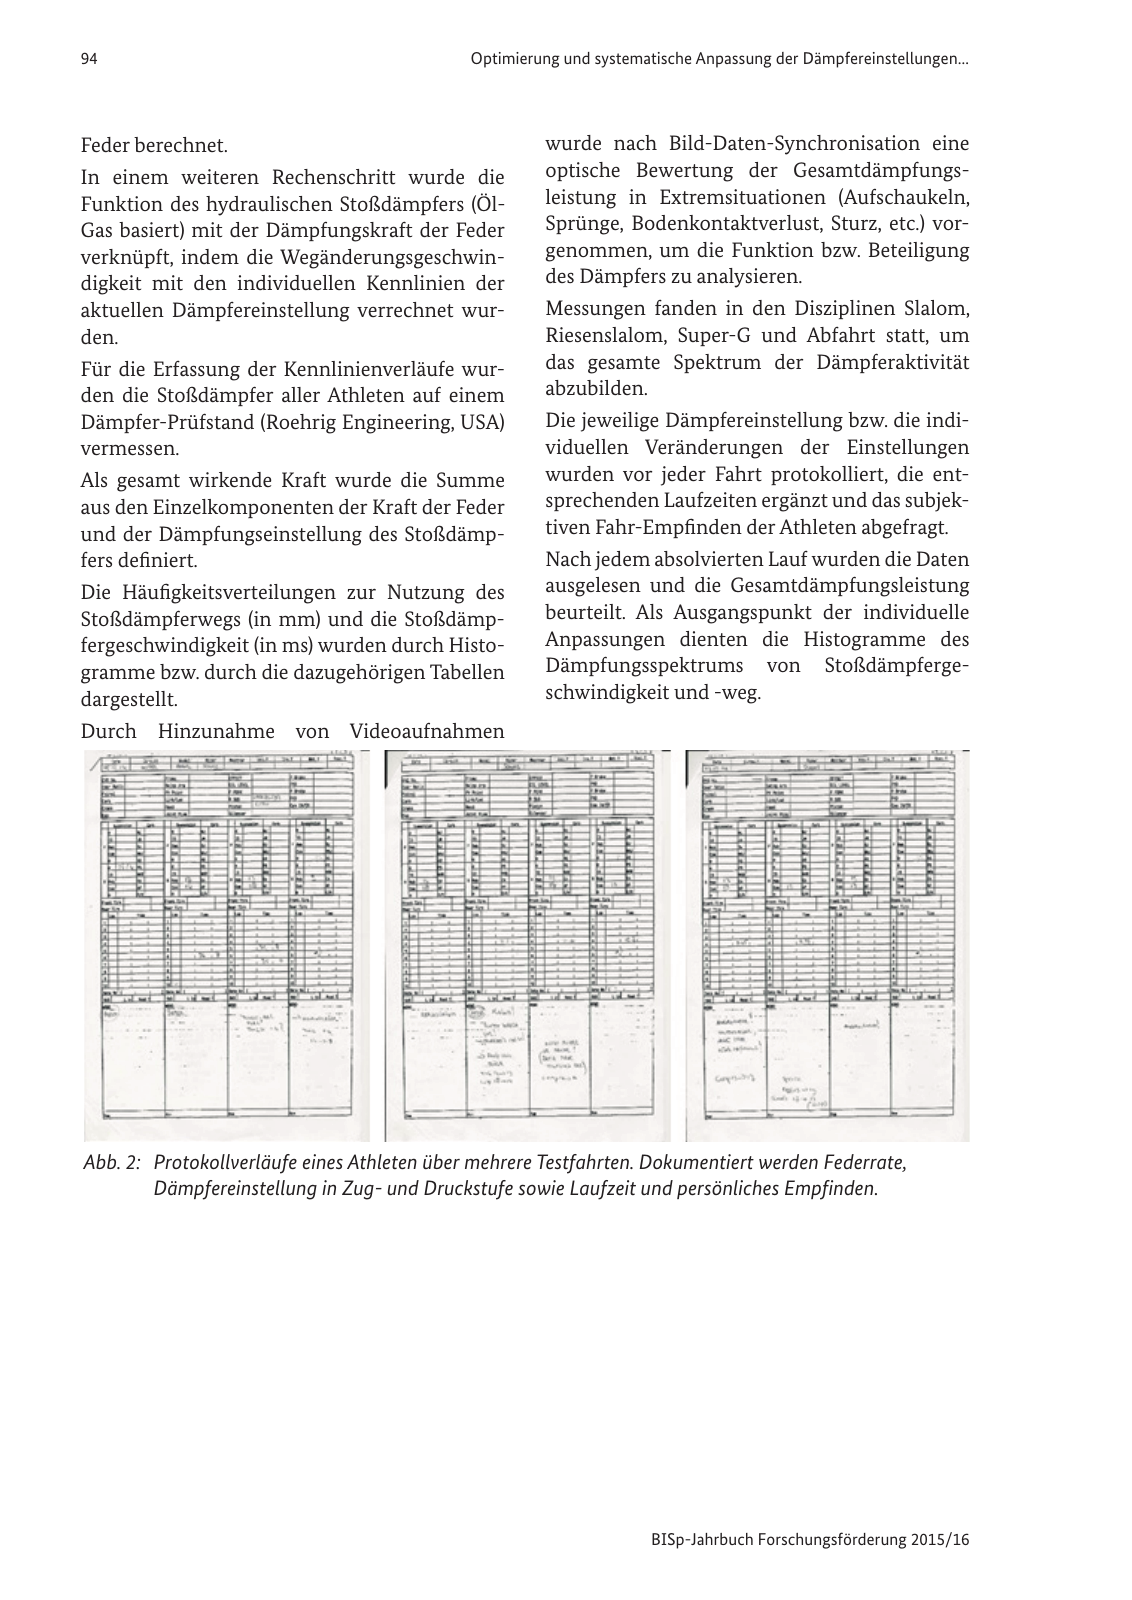 Vorschau BISp-Jahrbuch Forschungsförderung 2015/16 Seite 96